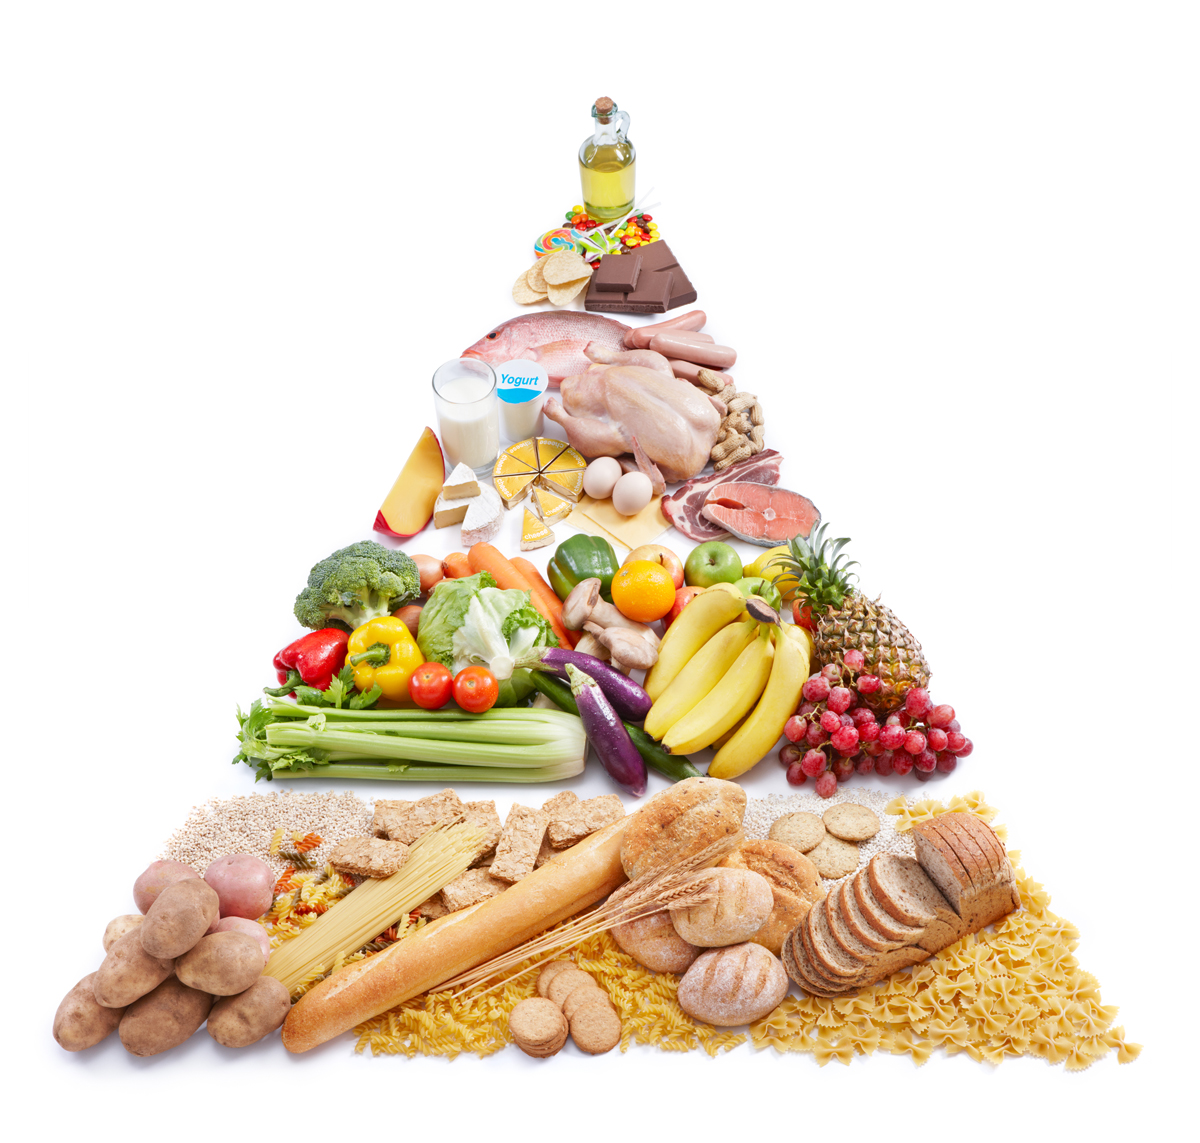 Chế độ dinh dưỡng cân bằng, hợp lý và đa dạng thức ăn, đặc biệt bổ sung lợi khuẩn để tăng sức đề kháng 